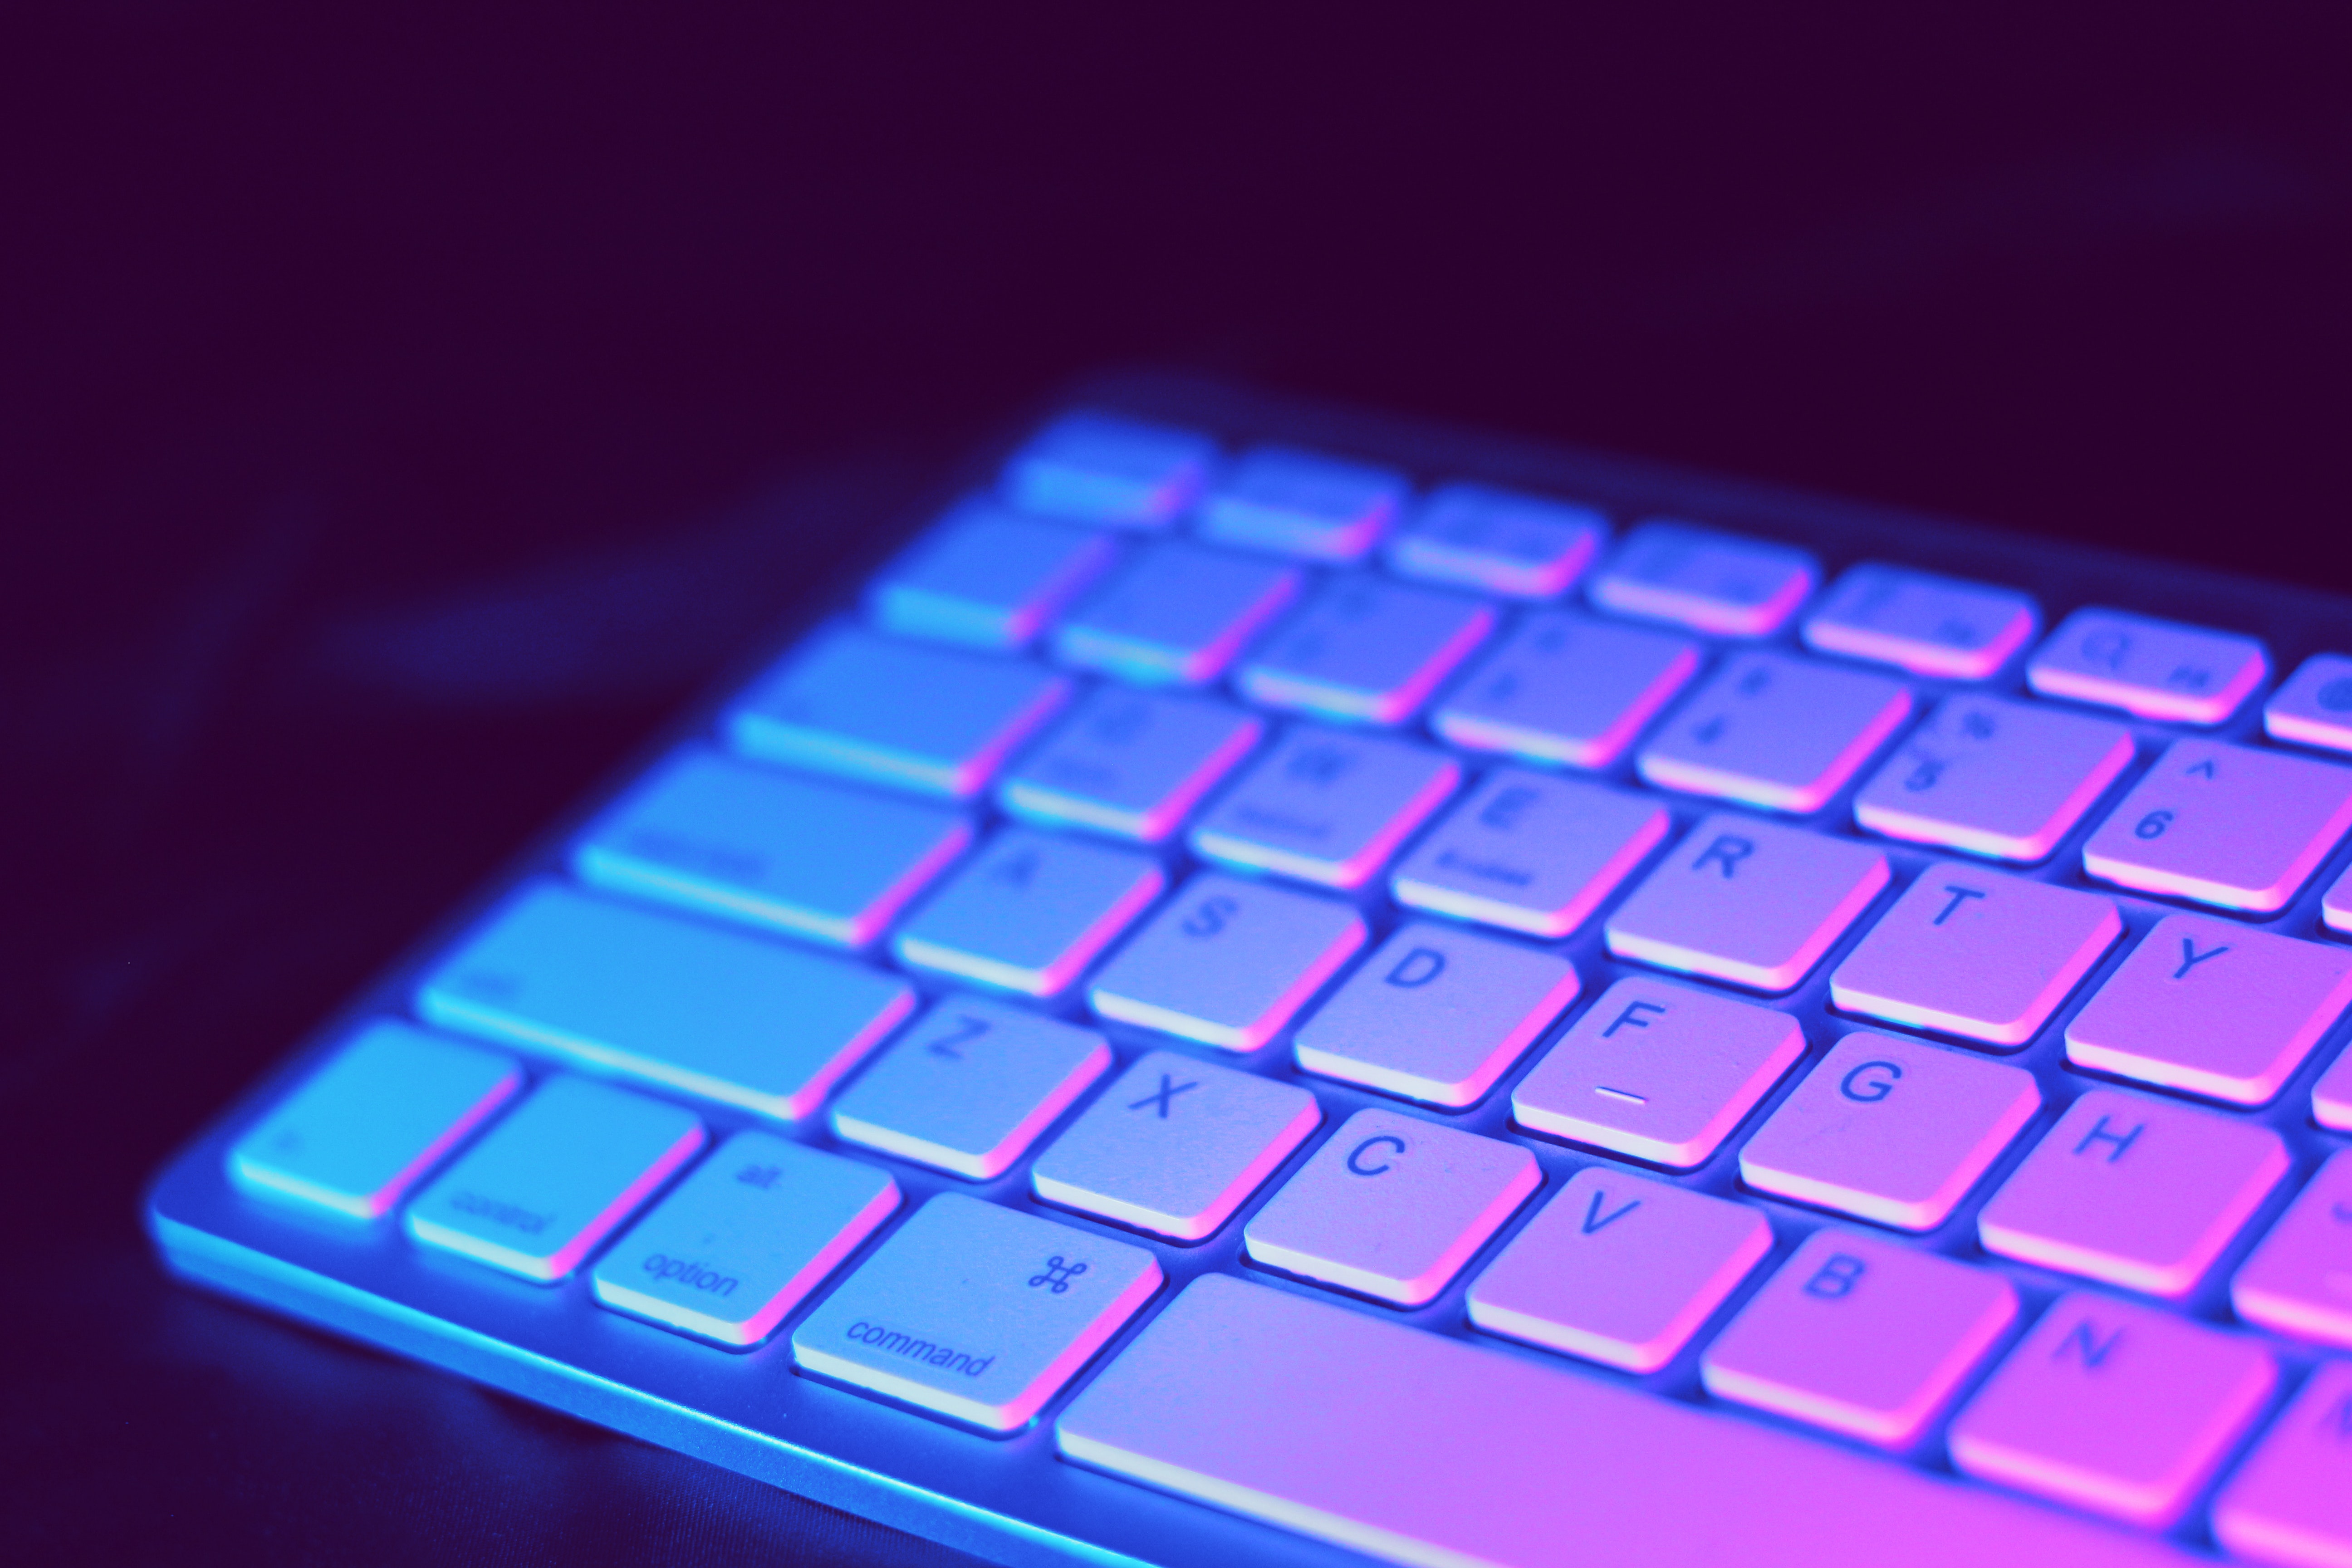 fond d'écran du clavier,clavier d'ordinateur,violet,bleu,violet,rouge